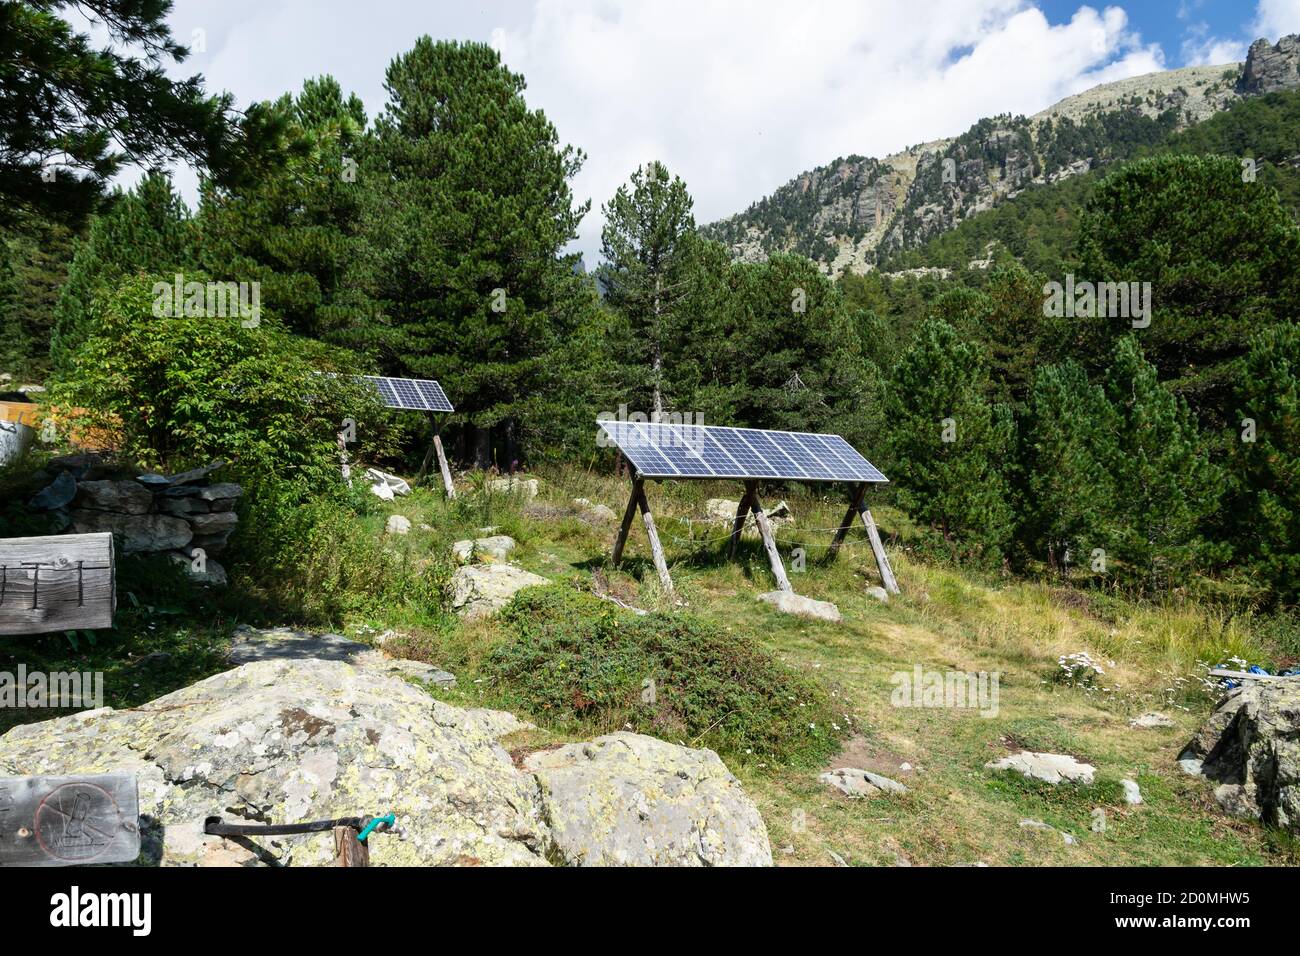 Kleine Sonnenkollektoren versorgen eine alpine Hütte im Varaita-Tal mit Strom. Stockfoto